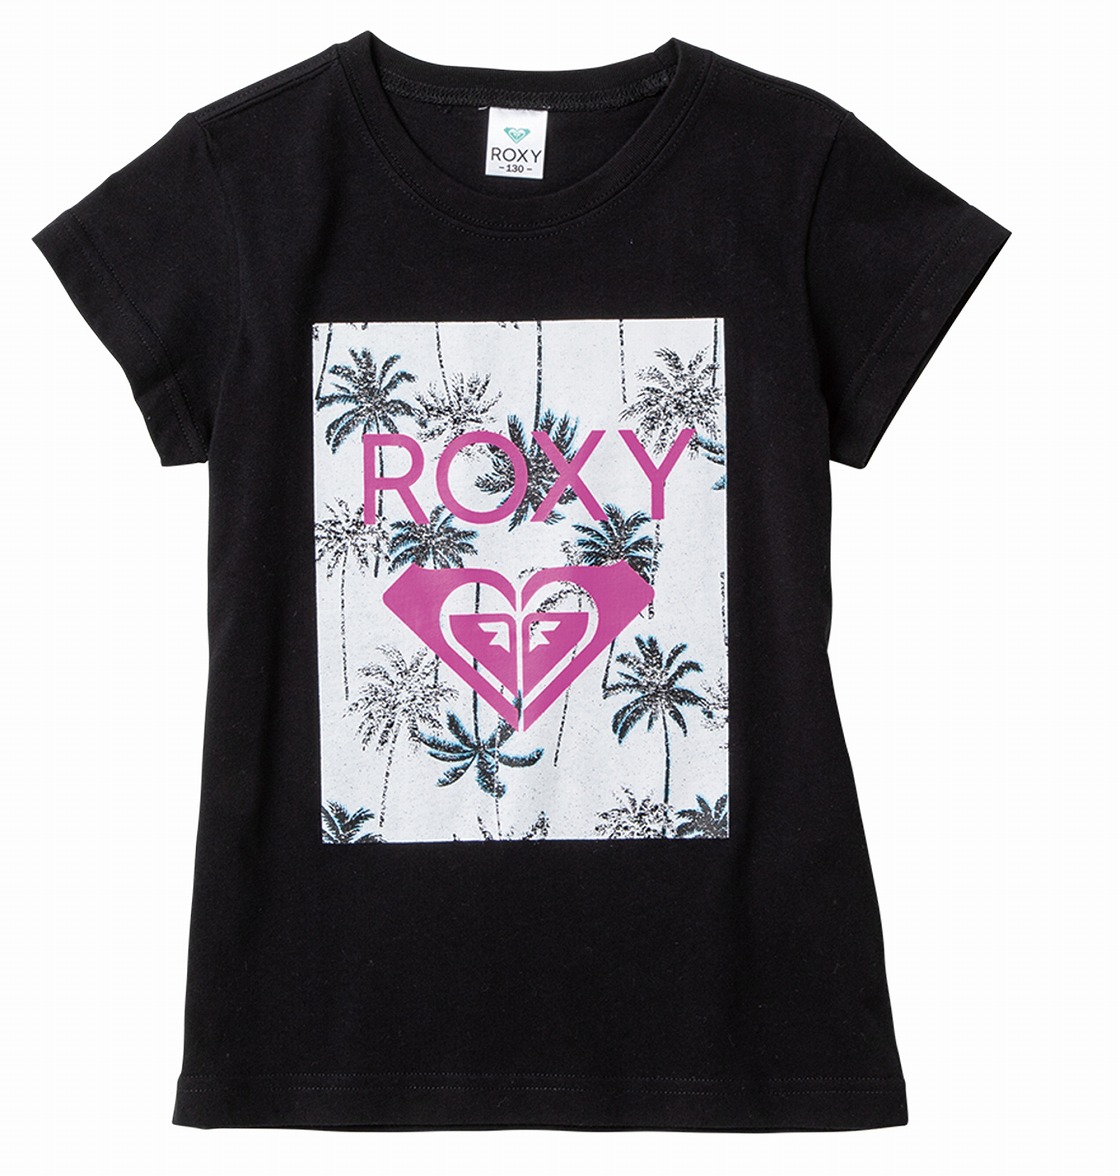 ROXY ロキシー SEAL限定商品 公式通販 1～3営業日以内に発送 アウトレット価格 Tシャツ 出色 SQUARE ティーシャツ 半袖 LOGO MINI